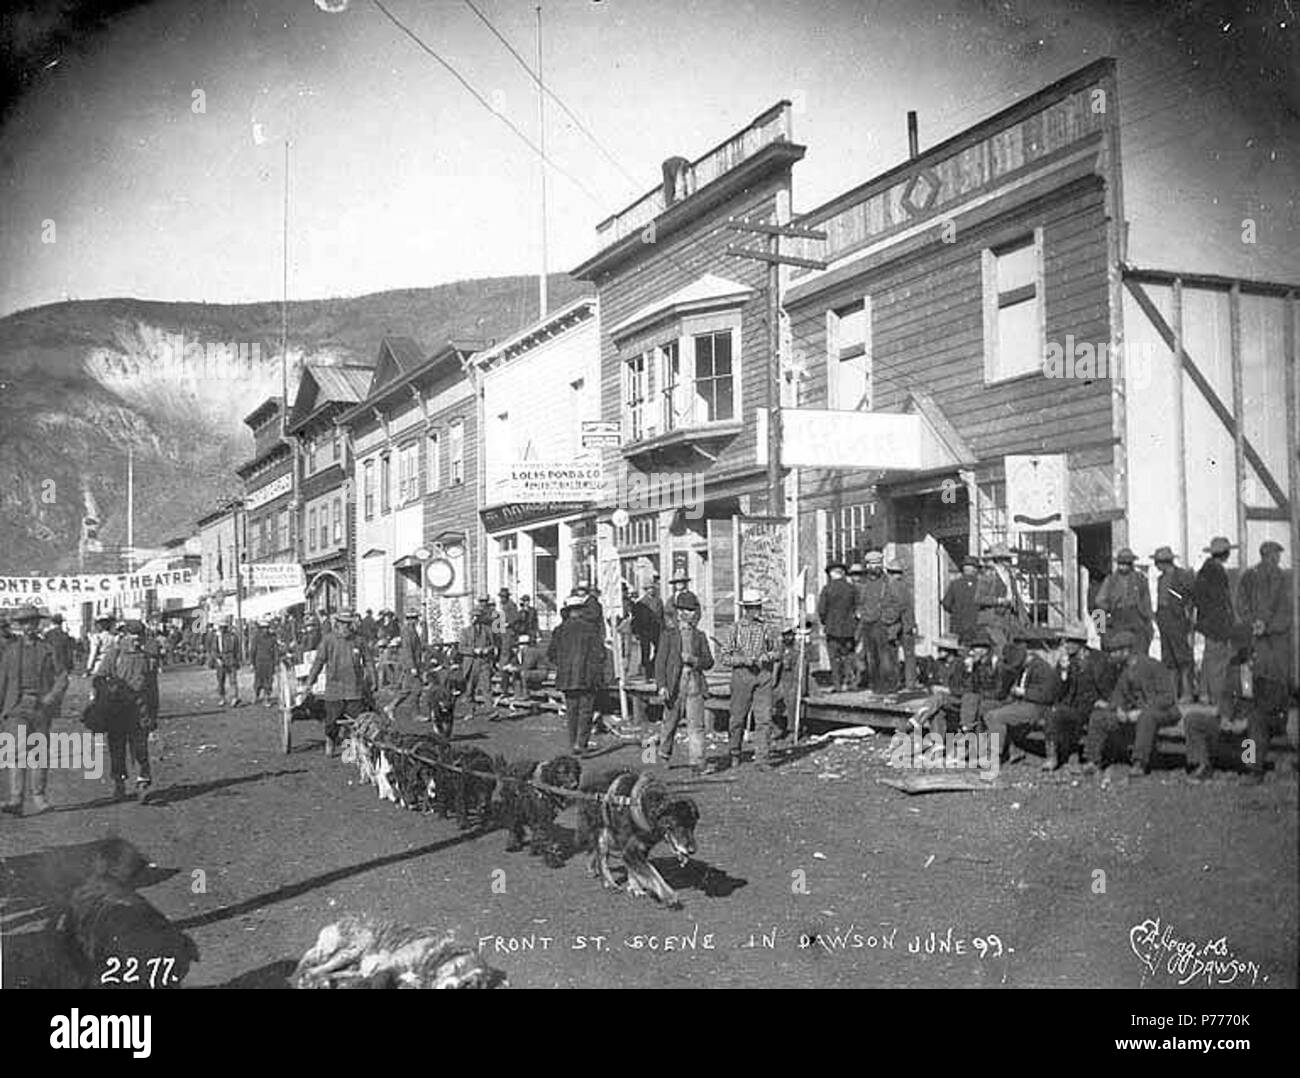 . Englisch: Front St., Dawson City, Yukon Territory, Juni 1898. Englisch: Zeigt dogteam schleppen Warenkorb in Street, 'Louis Teich & Co.' und 'Monte Carlo Theater' auf der rechten Seite auf das Bild Bildunterschrift: "Front St. Szene in Dawson Juni '99.''. Klondike Gold Rush. Themen (LCTGM): Straßen---- Yukon Dawson; Werbung ------ Yukon Dawson; Hund Mannschaften - Yukon - Dawson; Karren & Wagen ------ Yukon Dawson; Geschäfts----- Yukon Dawson; Theater ------ Yukon Dawson Themen (LCSH): vordere Straße (Dawson City, Yukon); Louis Teich & Co (Dawson City, Yukon); Monte Carlo Theater (Dawson City, Yukon). 1898 5 Front St, Dawson City, Yukon Territory, Juni 1898 ( Stockfoto